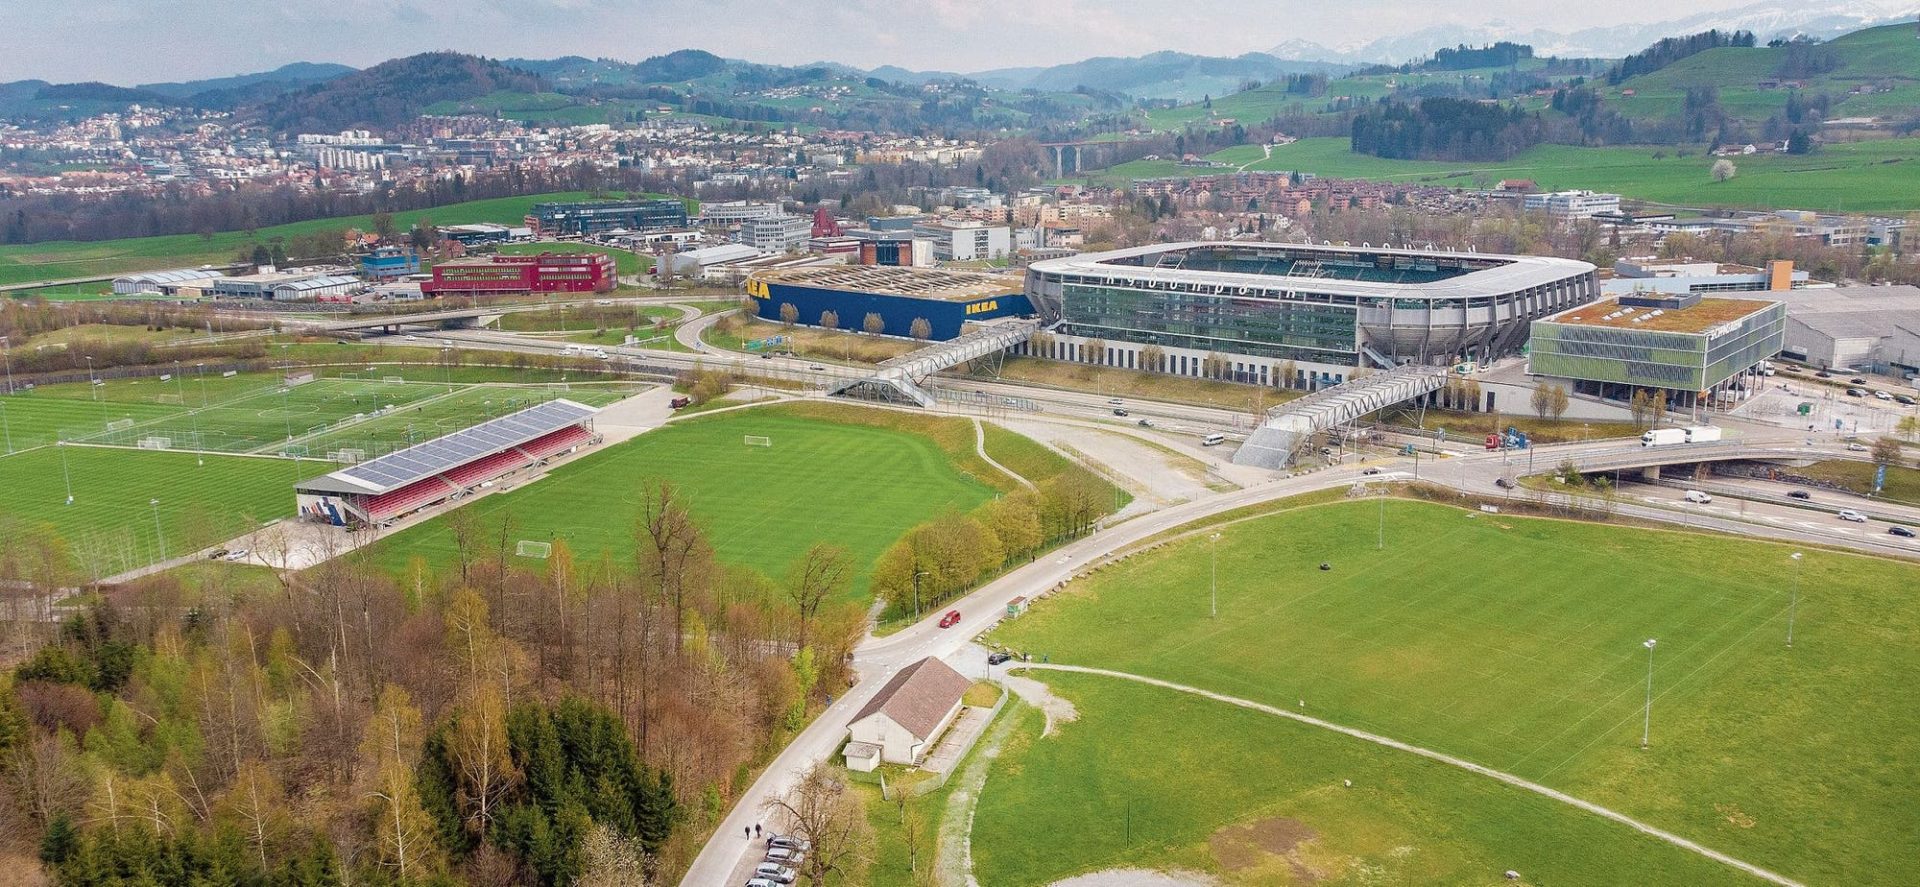 «Riesendimensionen»: Eidgenössisches Schwingfest 2025 in St.Gallen würde mehr Platz auf dem Breitfeld brauchen als bisher angenommen